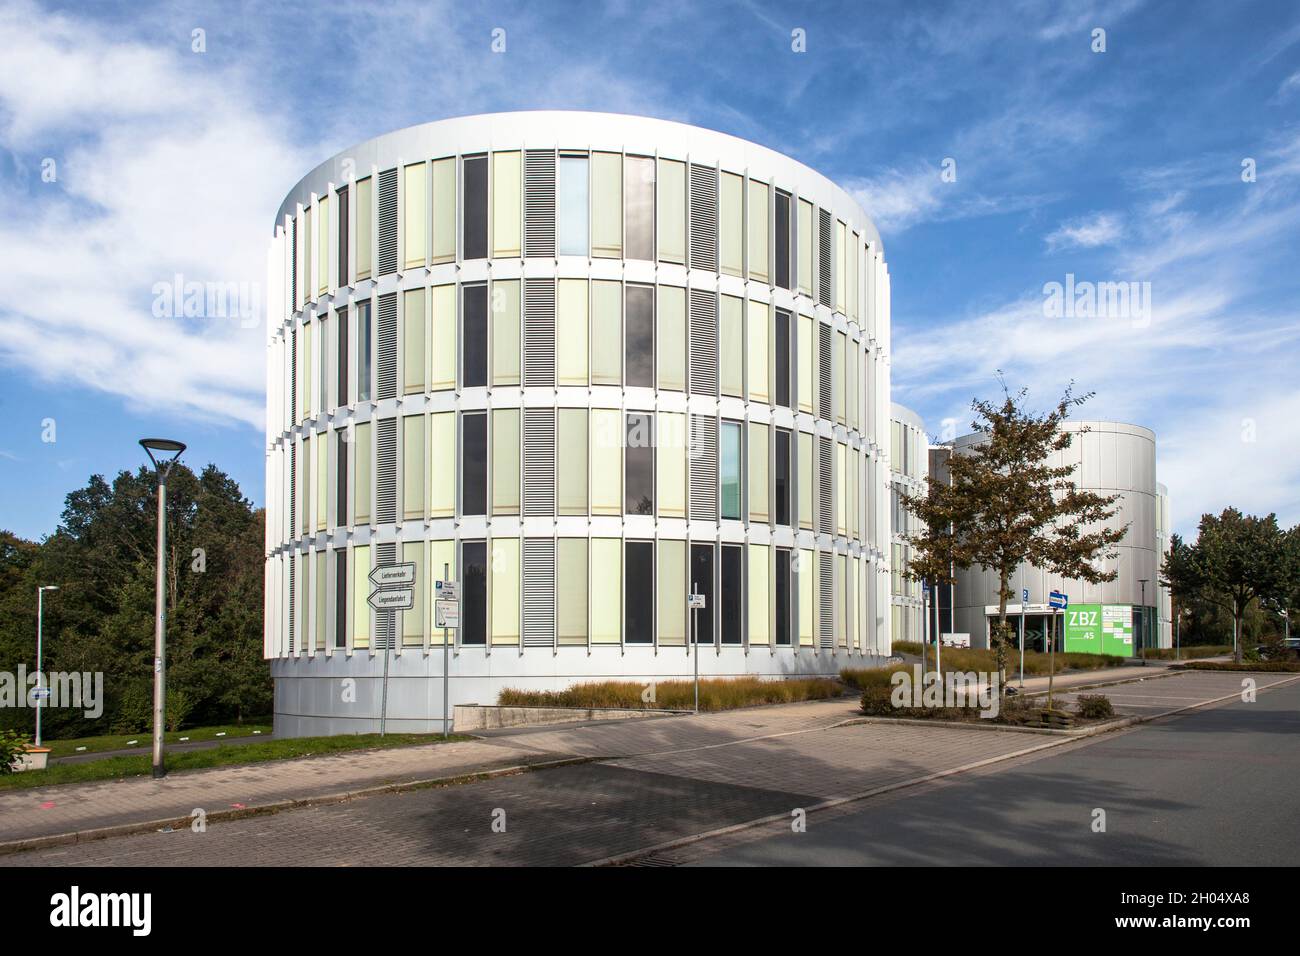 Le centre de recherche dentaire et des sciences de la vie de Witten (ZBZ), Witten, Rhénanie-du-Nord-Westphalie, Allemagne.Zahnmedizinisch-Biowissenschaftliches Forschun Banque D'Images